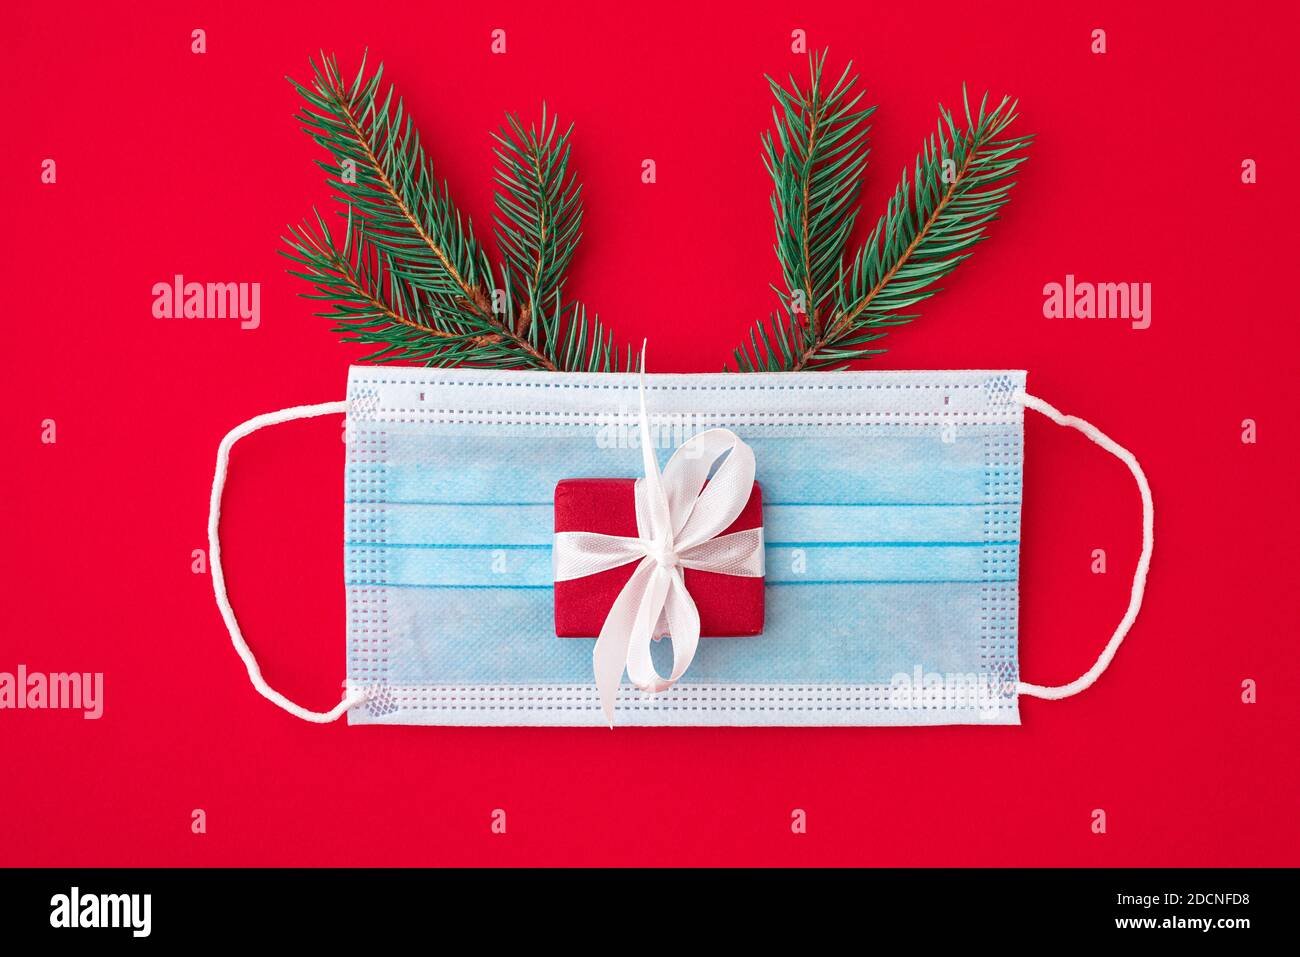 Coronavirus weihnachtskonzept aus Gesichtsmaske, Tannenbaum, Geschenkbox und Dekorationen auf rotem Hintergrund. Flache Lage. Draufsicht Stockfoto